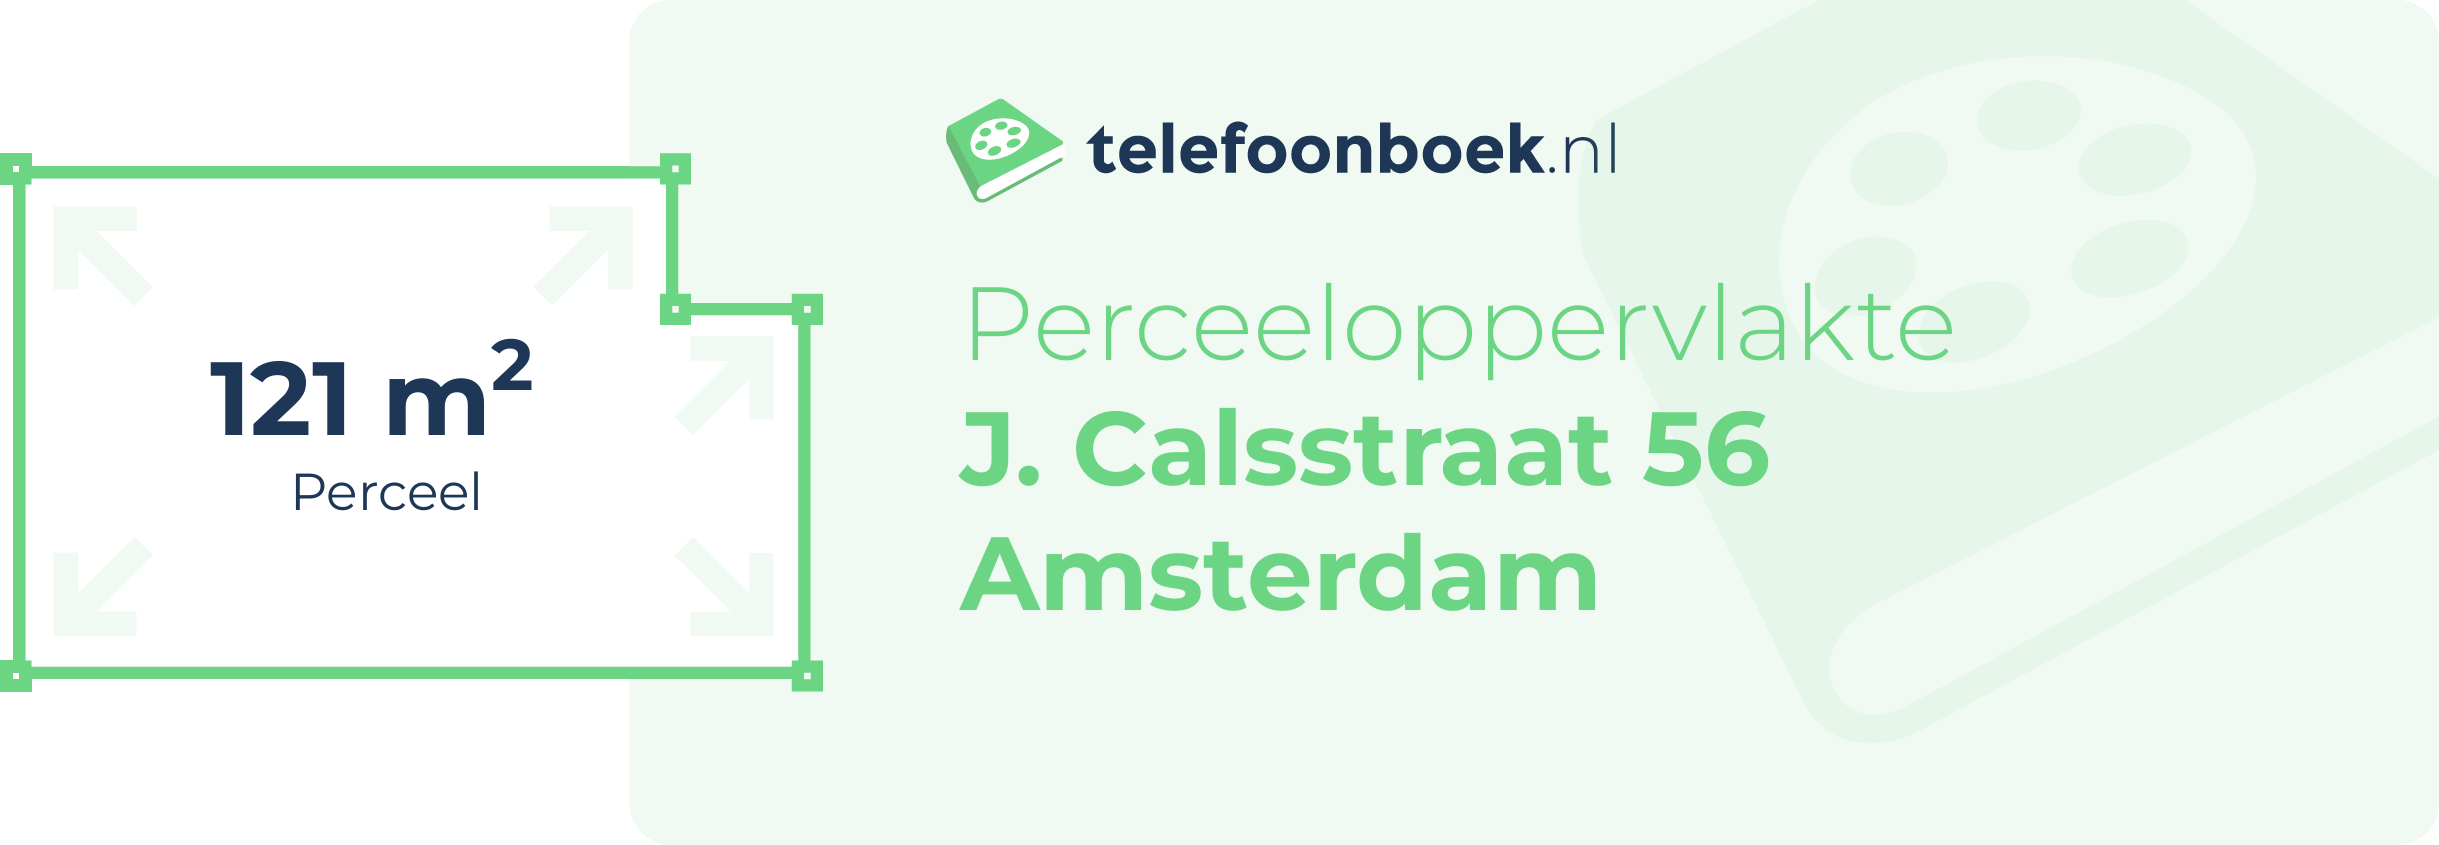 Perceeloppervlakte J. Calsstraat 56 Amsterdam